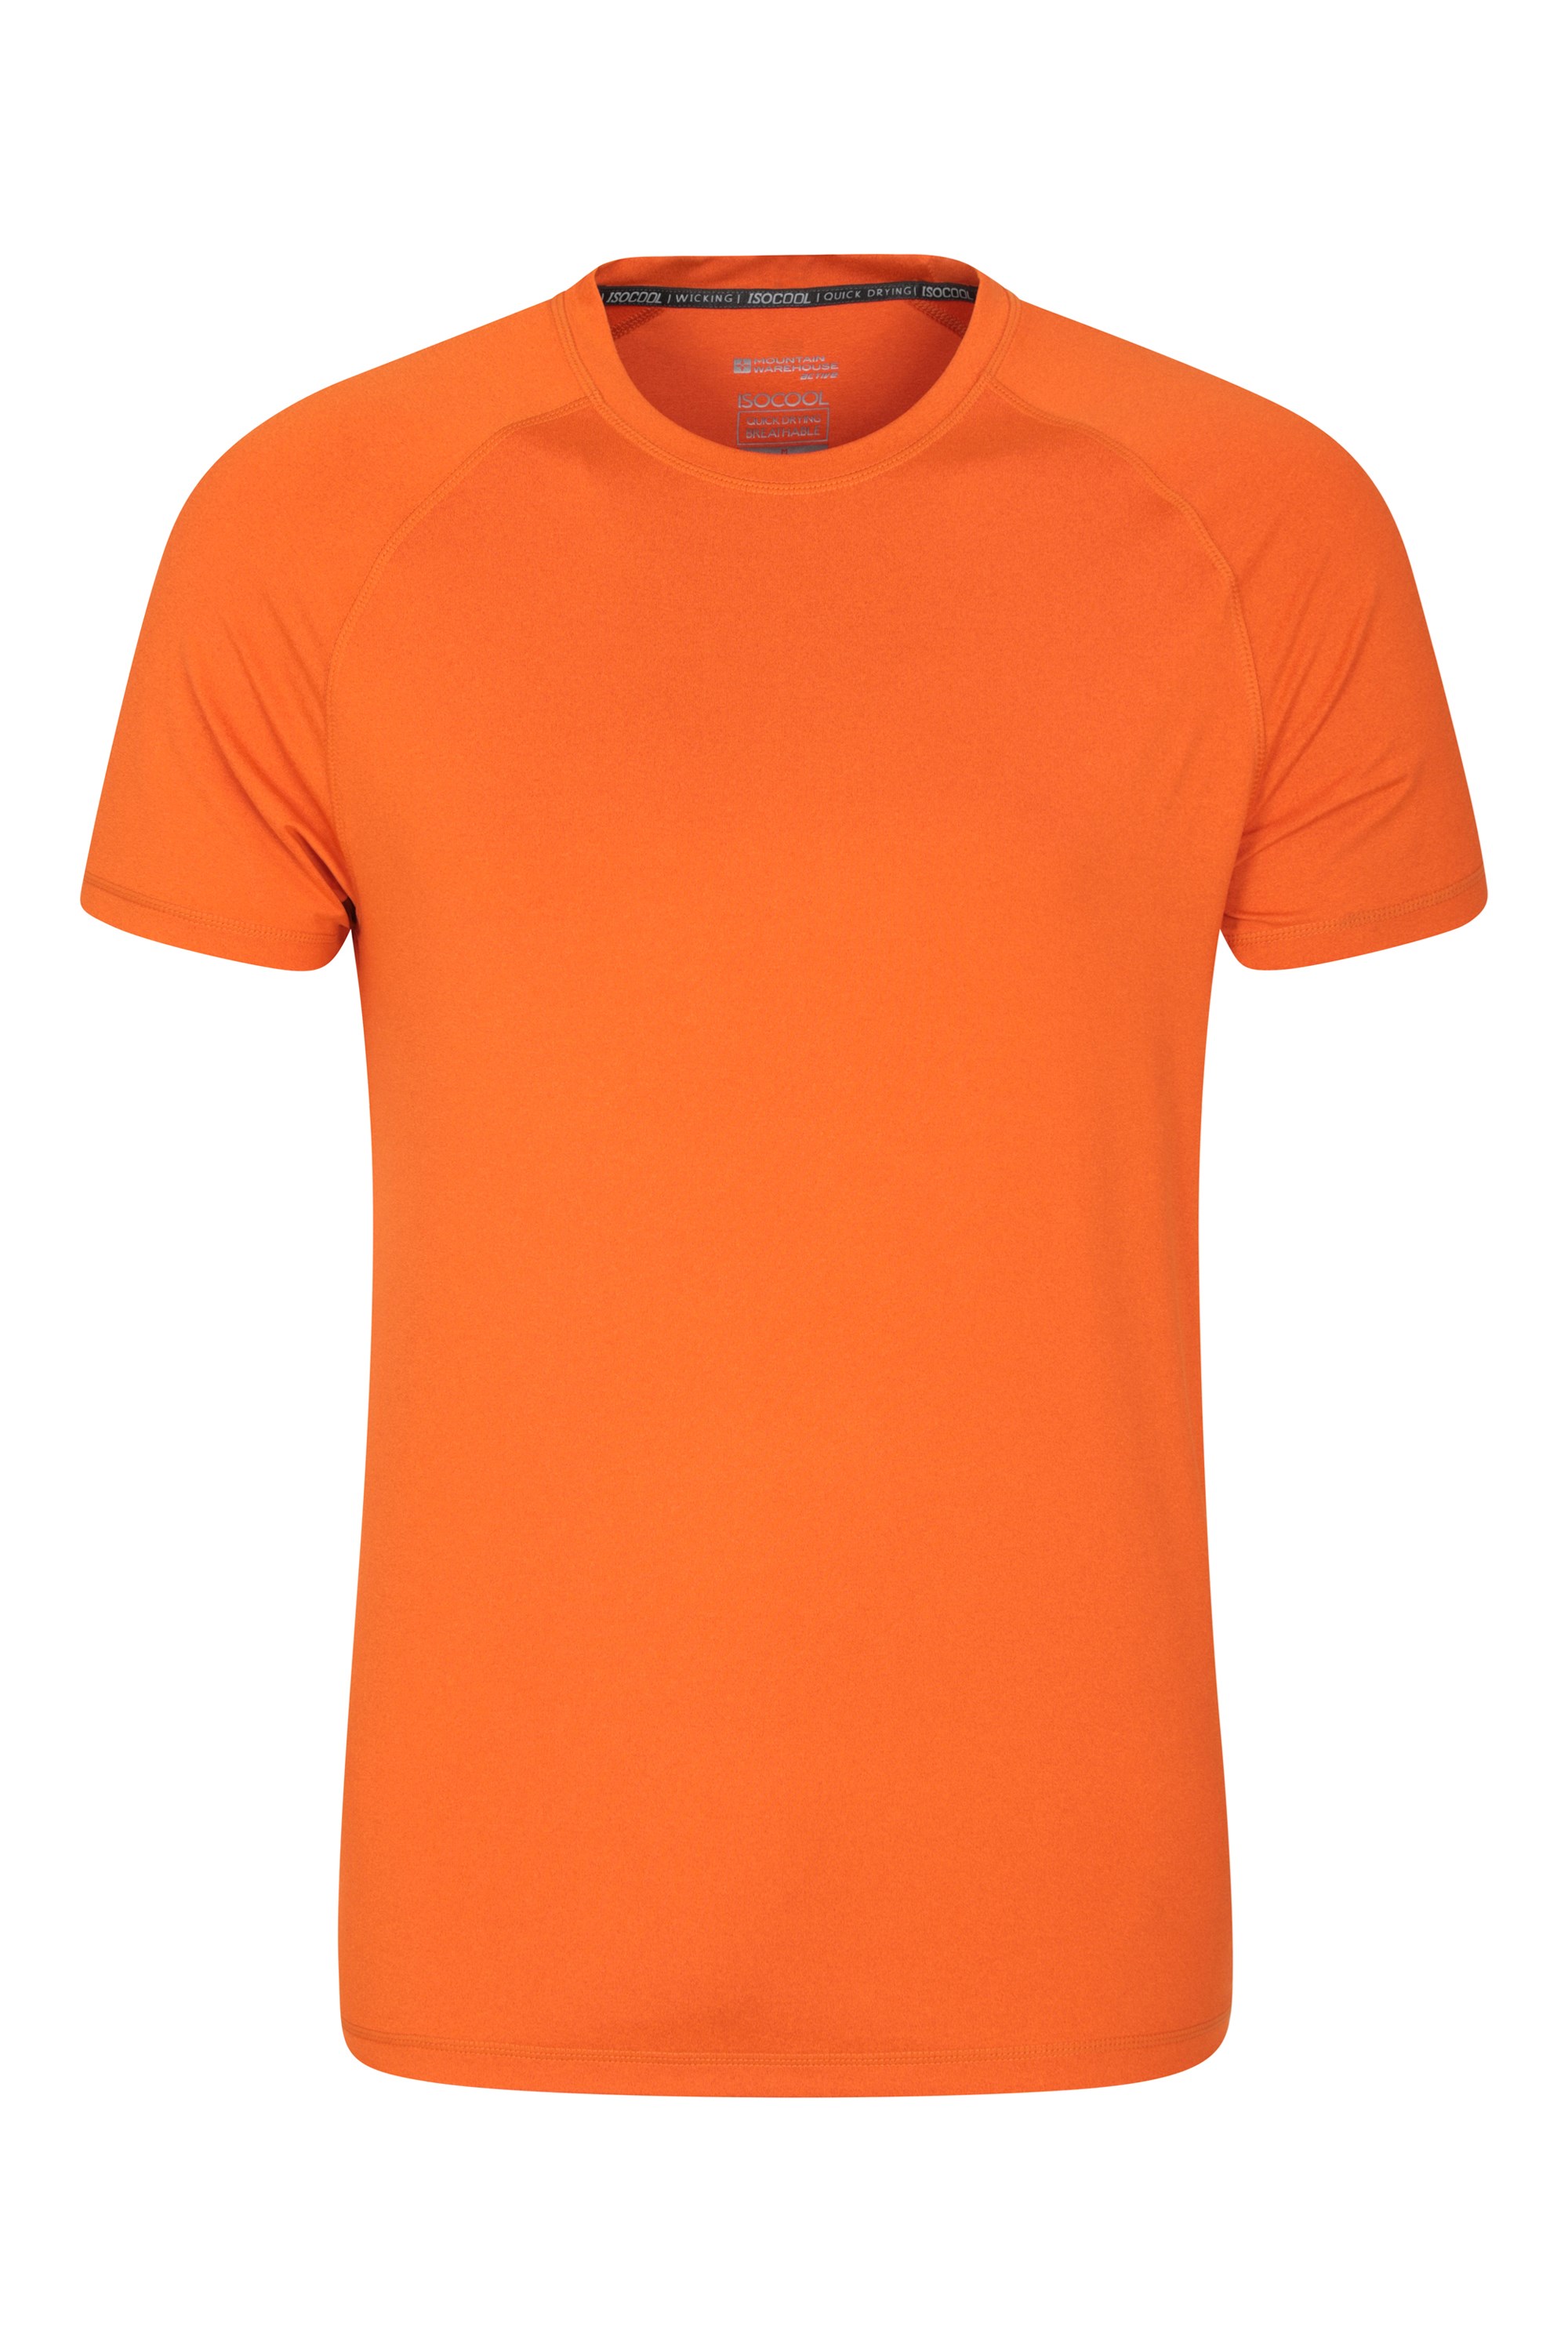 Agra Mens Melange T-Shirt - Burnt Orange